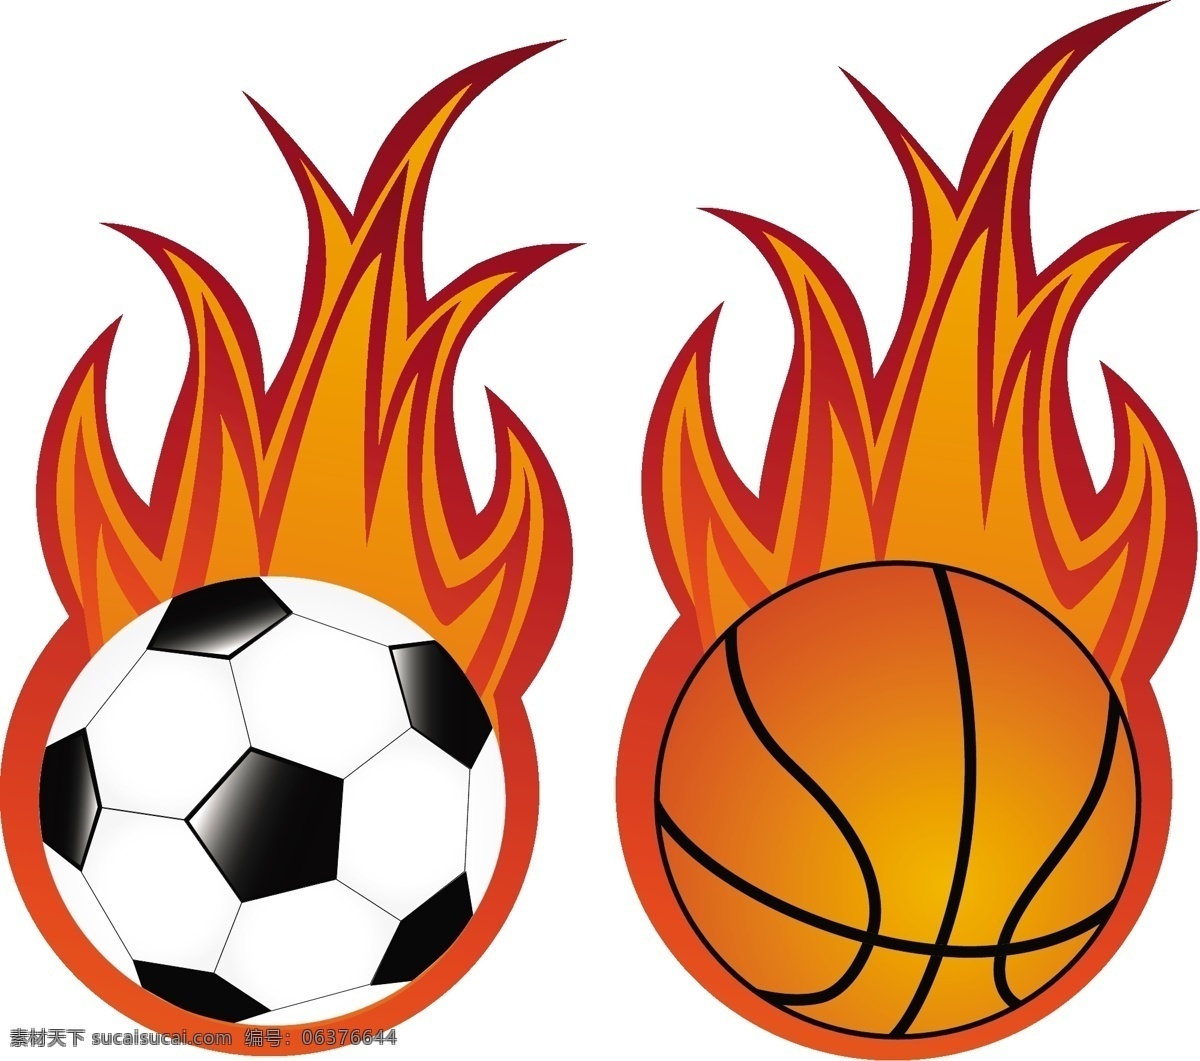 火焰 足球 篮球 矢量素材 矢量图 其他矢量图